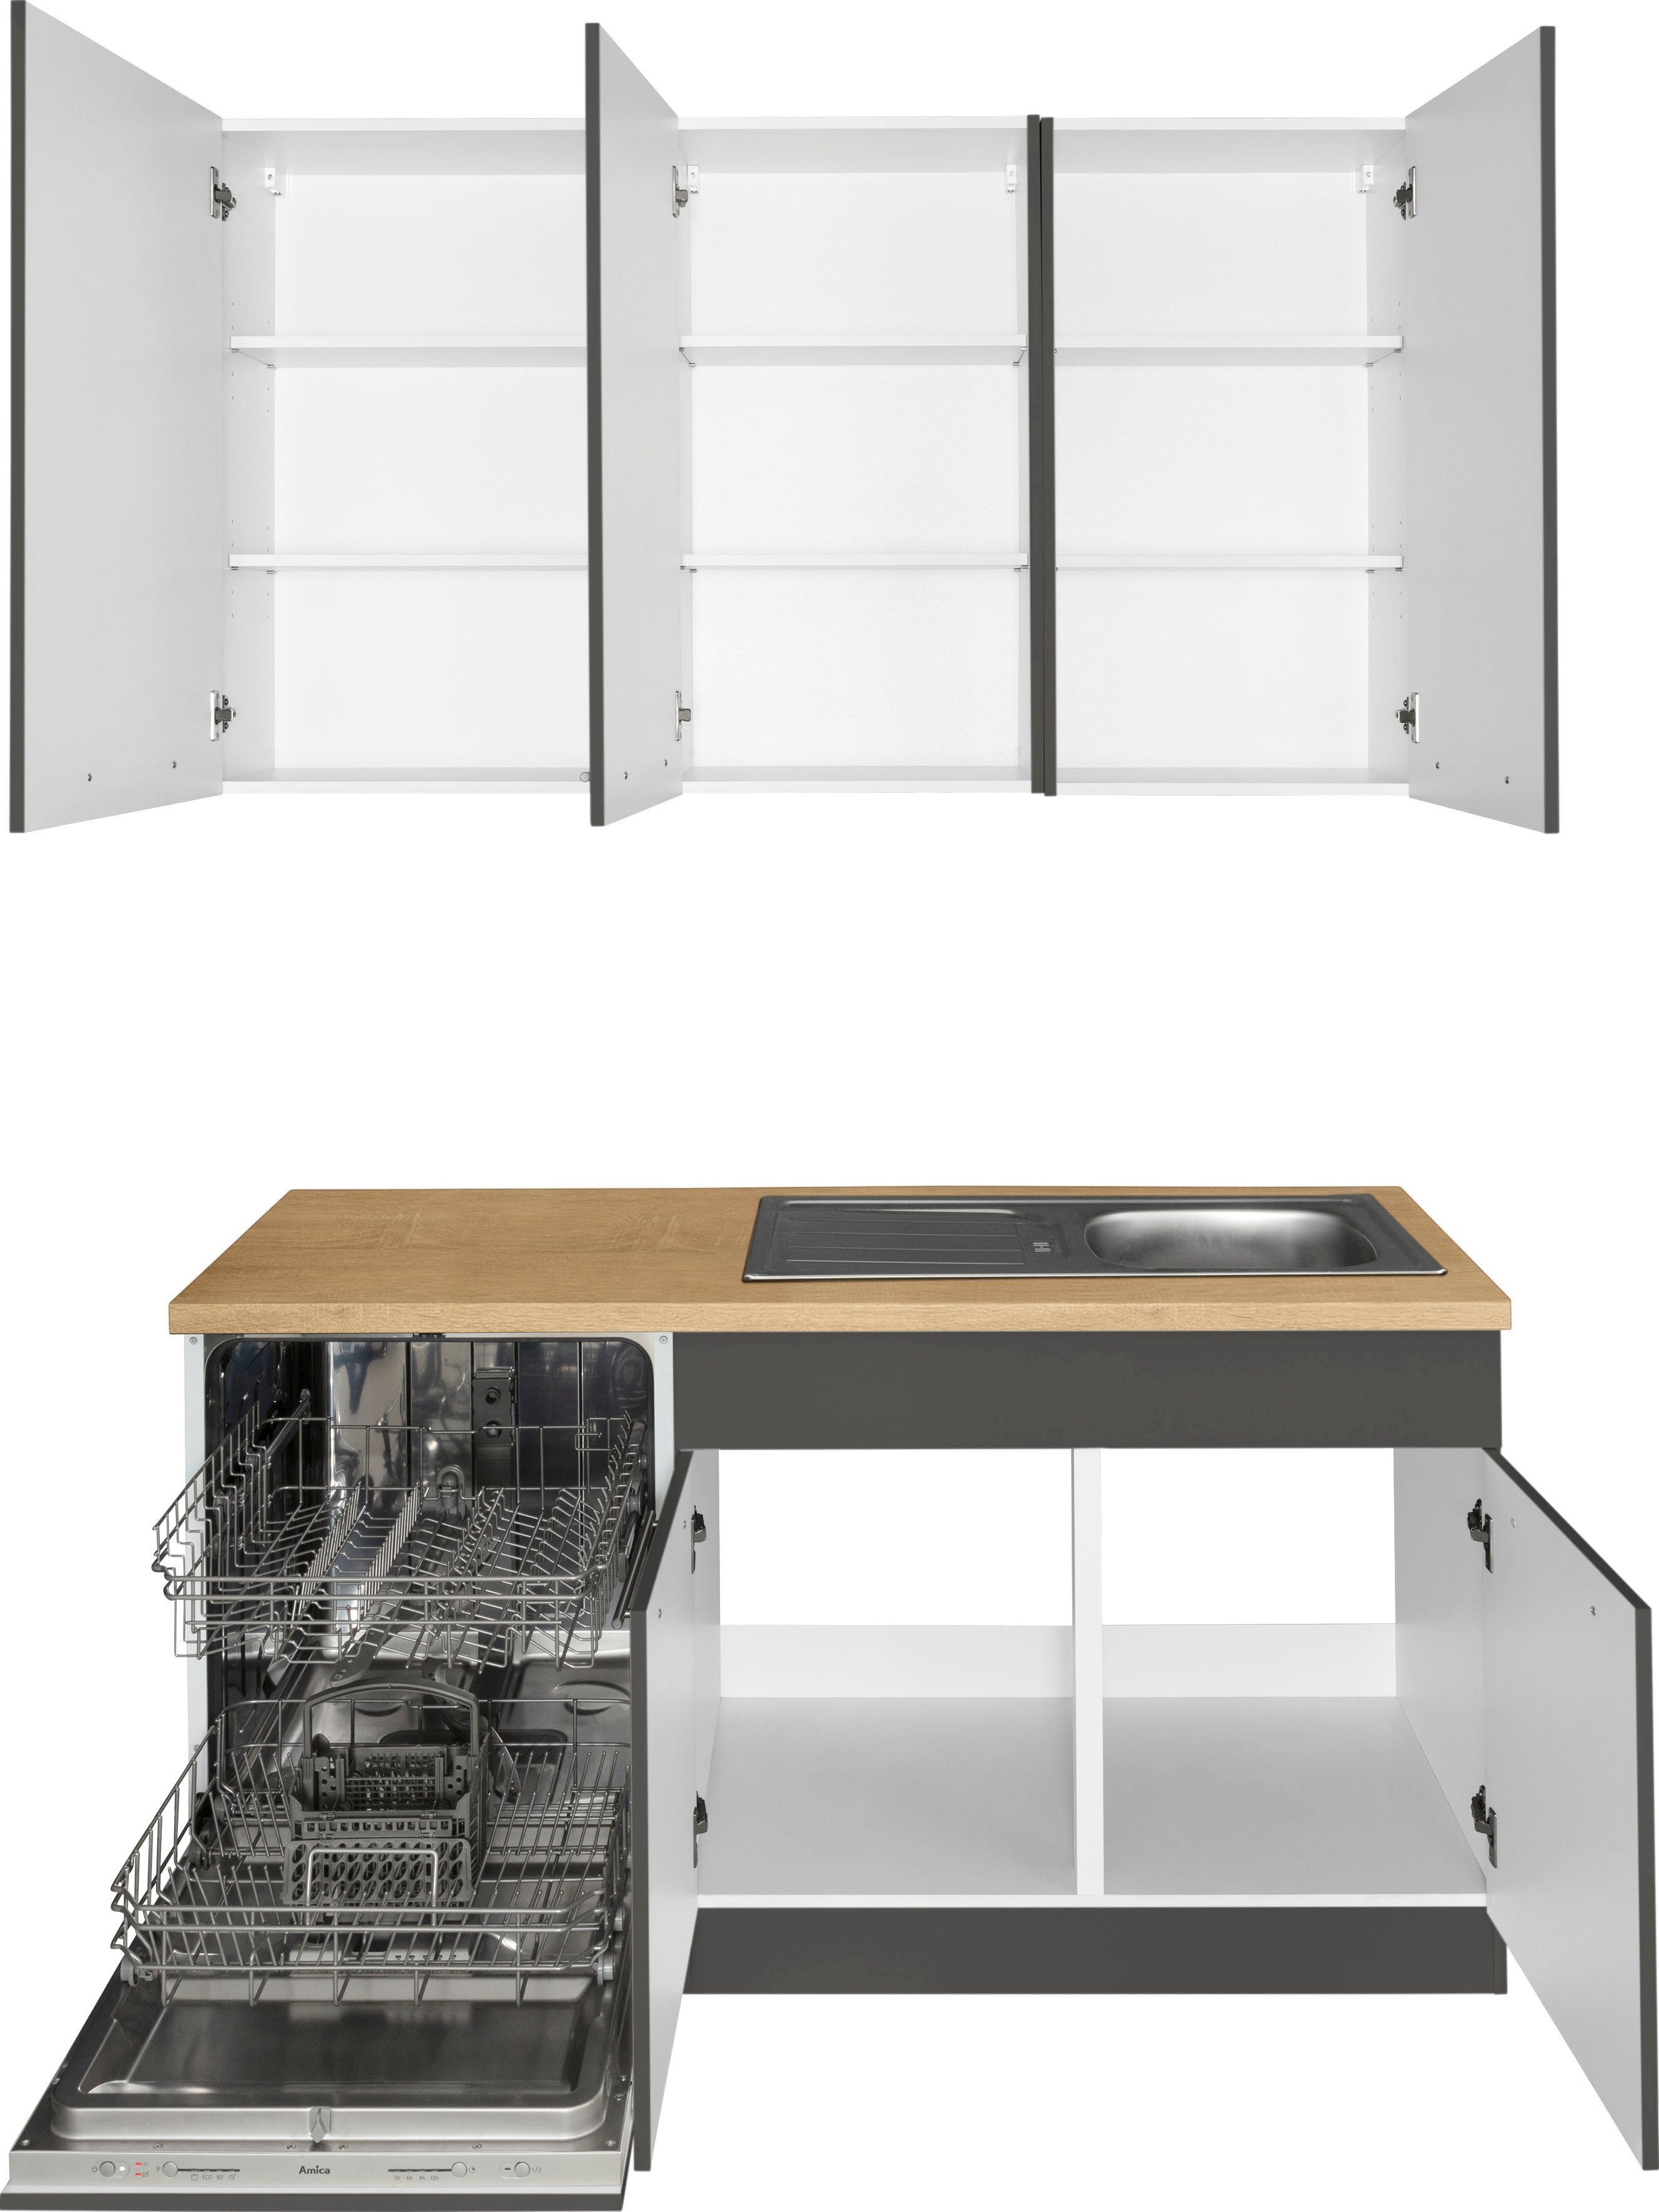 wiho Küchen Winkelküche anthrazit Stellbreite mit cm 220 E-Geräten, | x Unna, Anthrazit 260